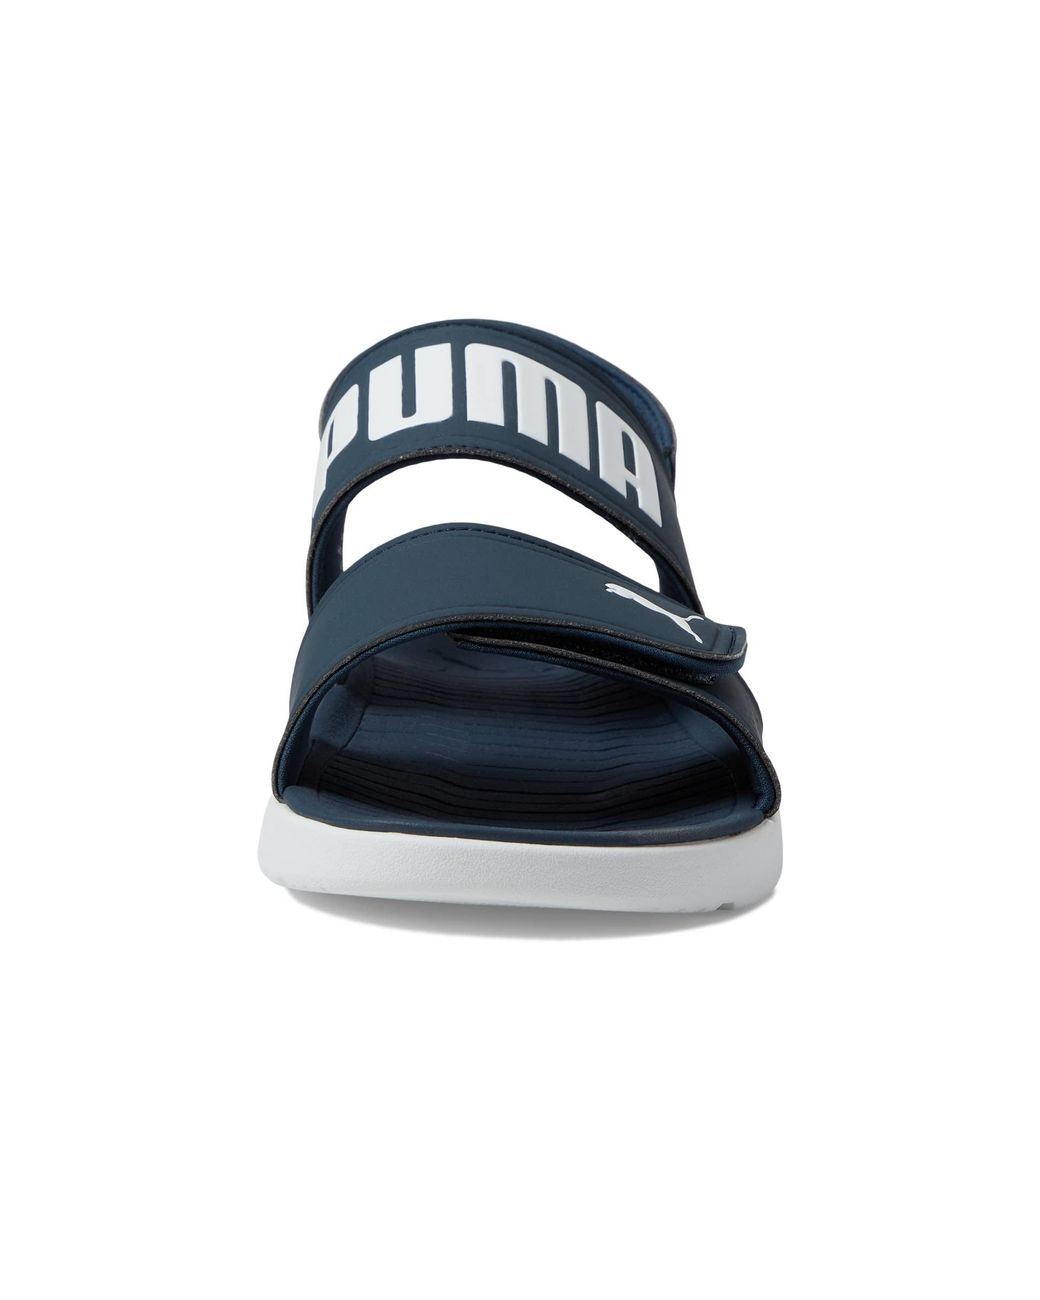 PUMA Flip-Flops Sandals for Men | Mercari-hkpdtq2012.edu.vn